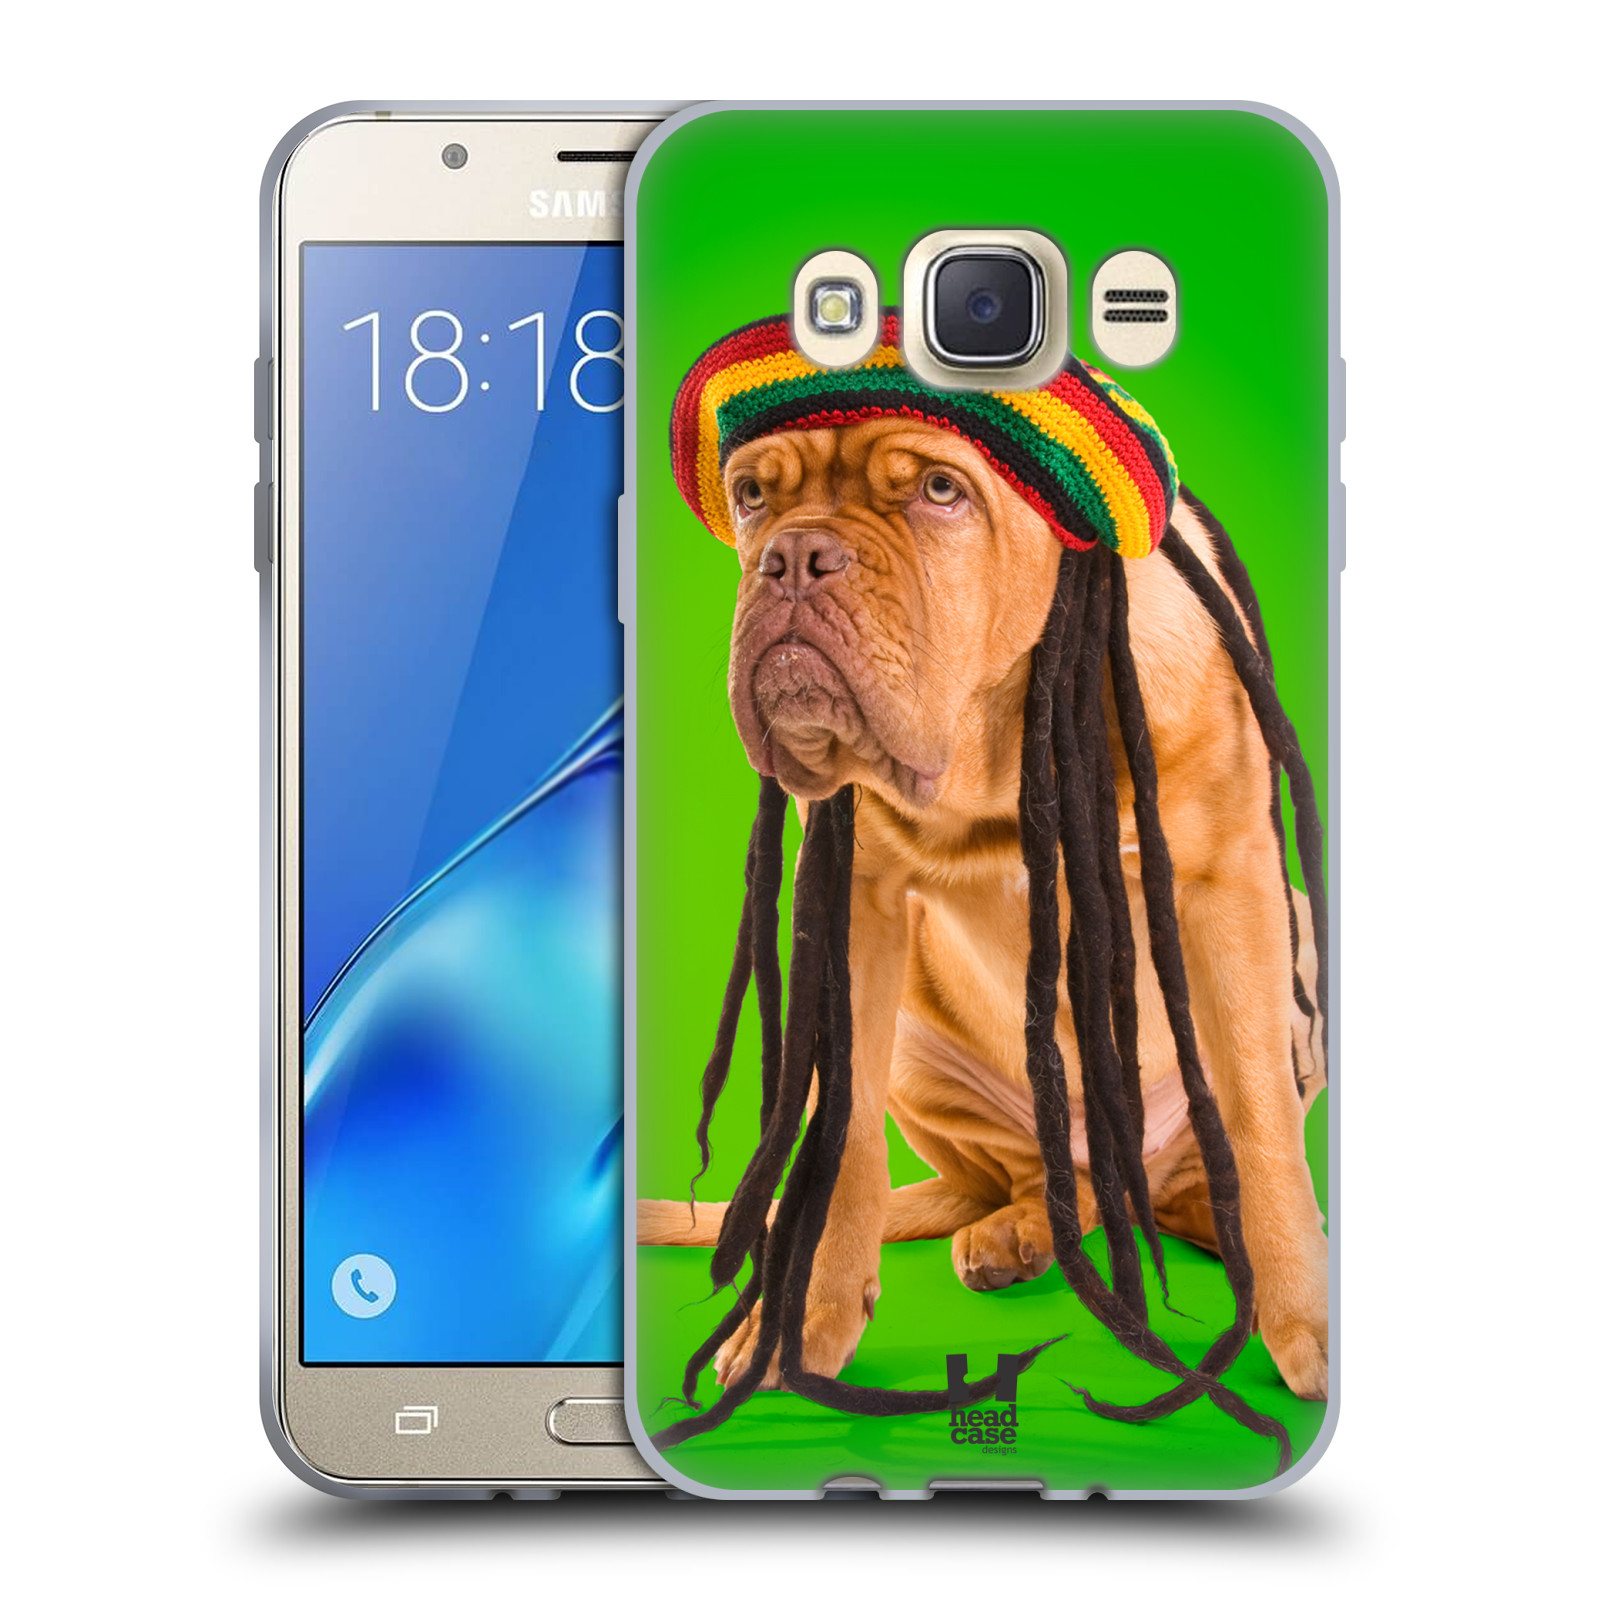 HEAD CASE silikonový obal, kryt na mobil Samsung Galaxy J7 2016 (J710, J710F) vzor Legrační zvířátka pejsek dredy Rastafarián